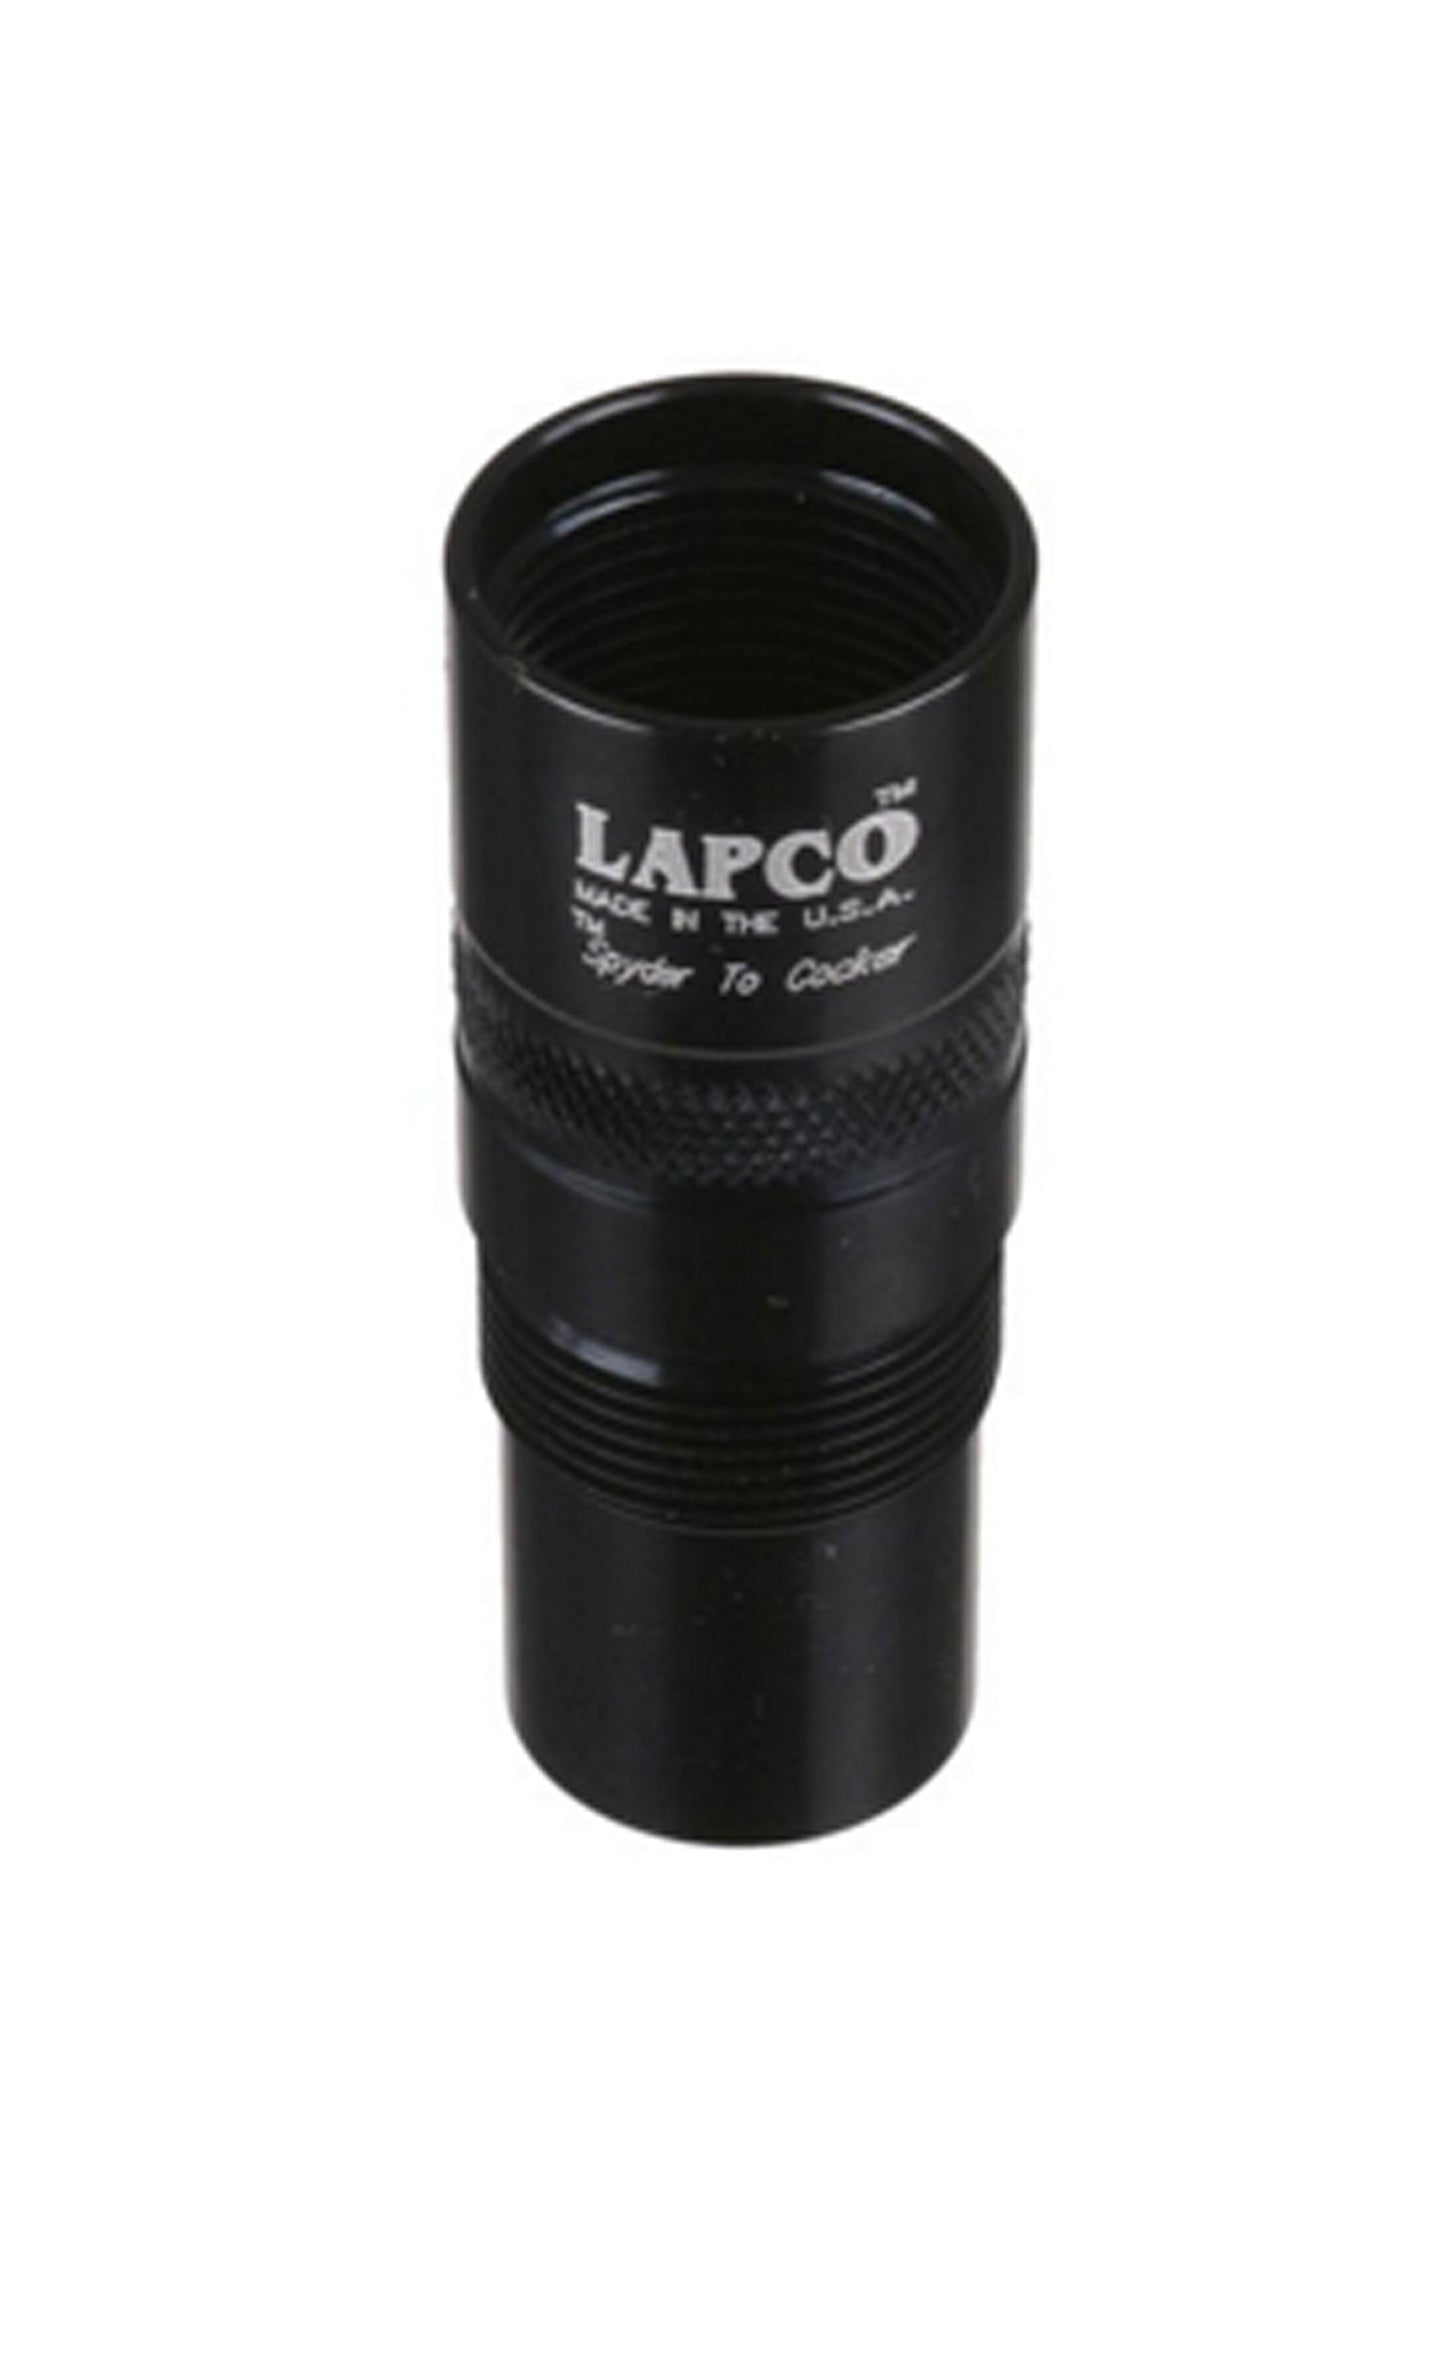 Lapco Barrel Thread Adapter